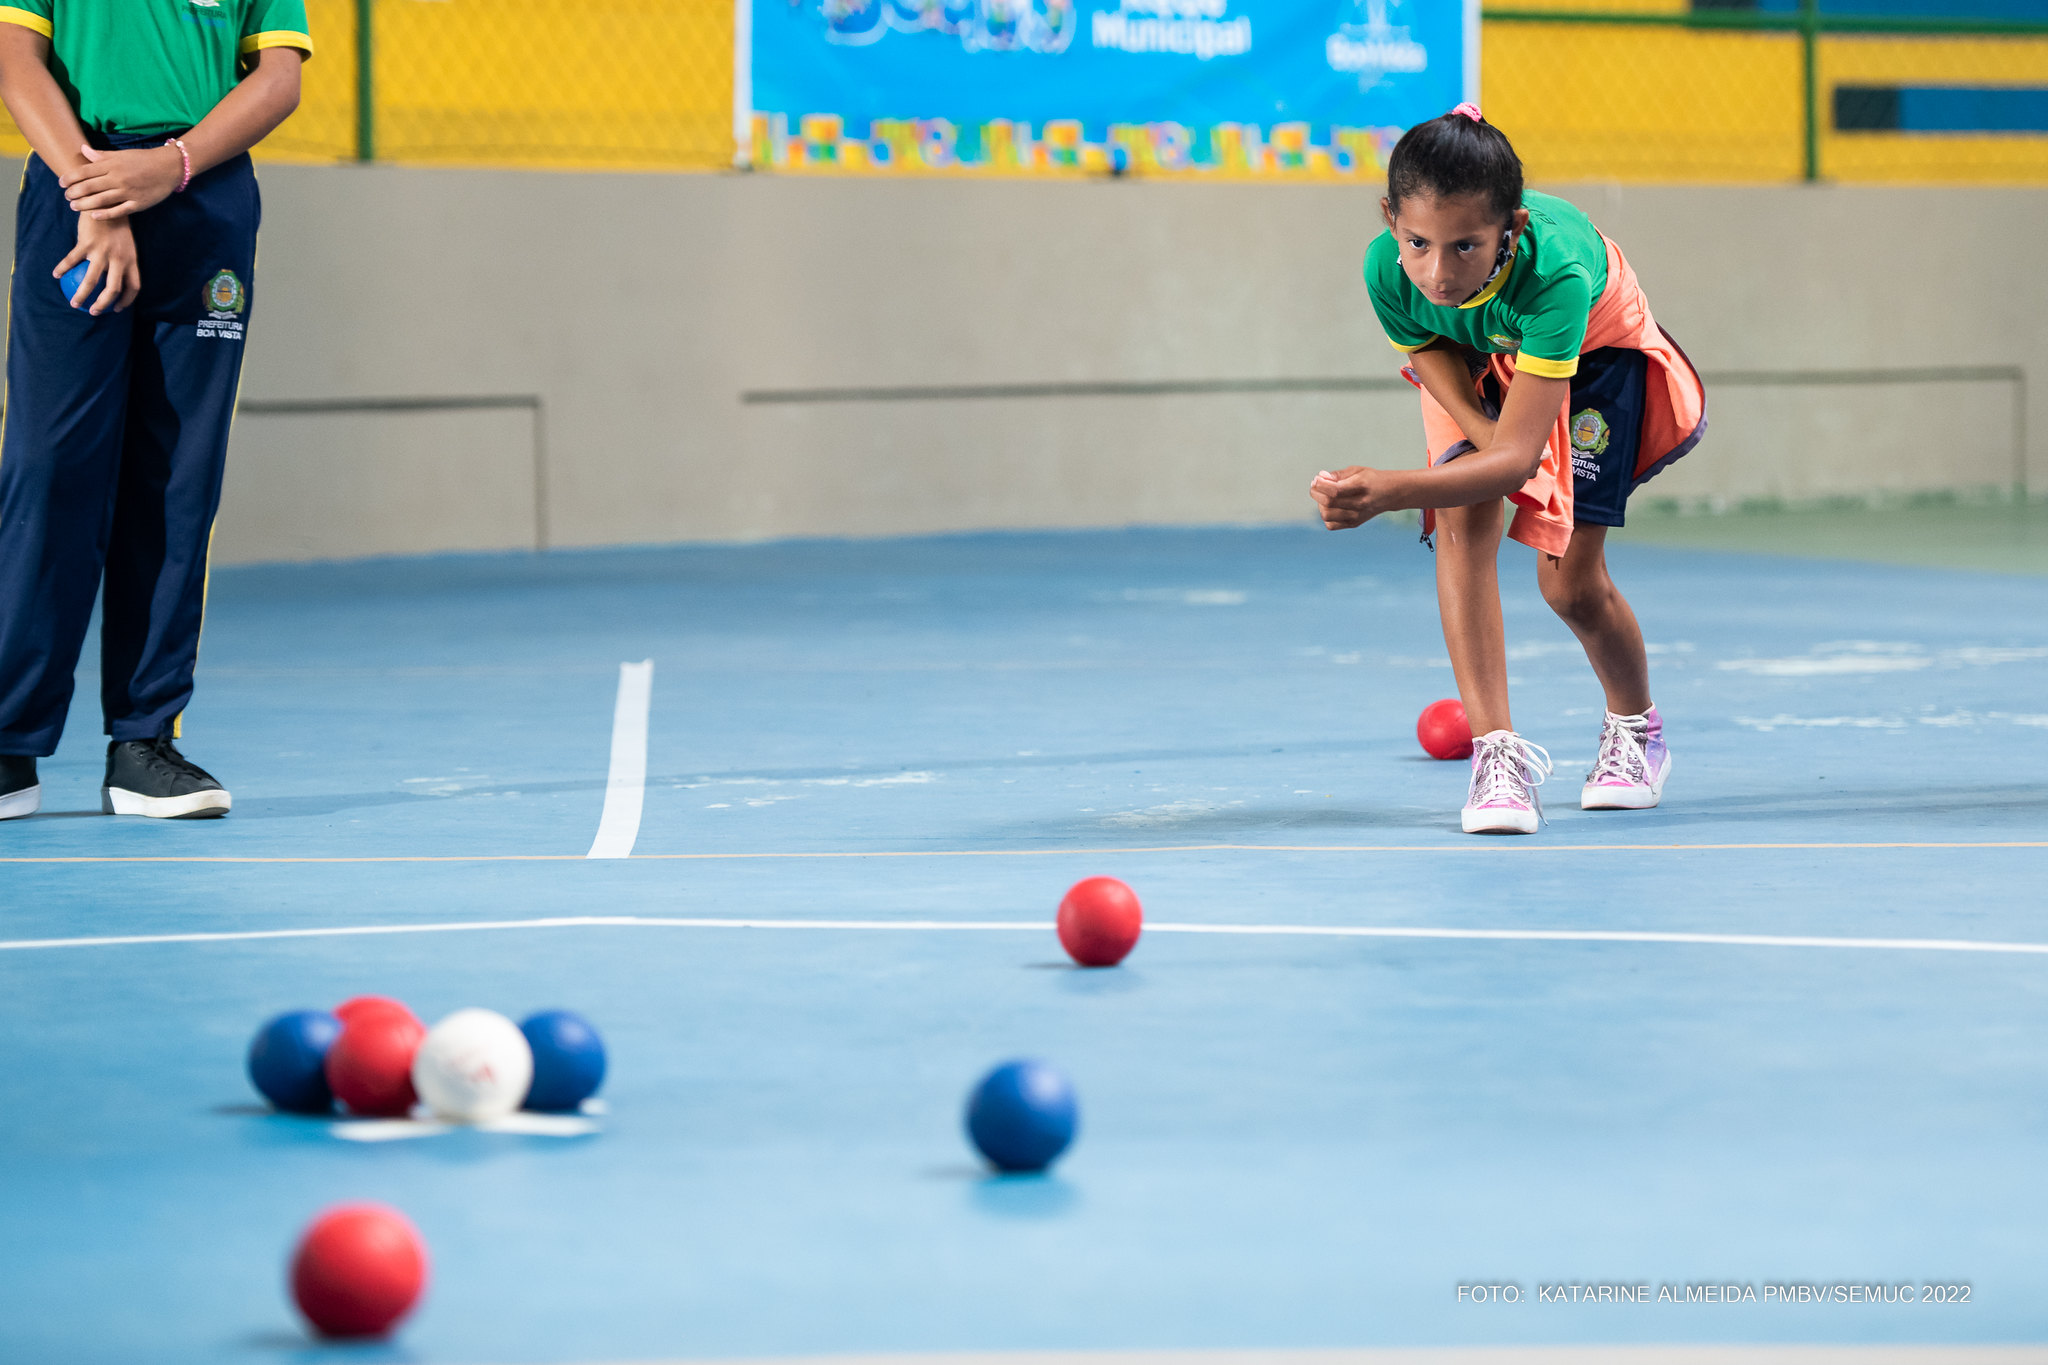 Bocha adaptada é uma das atrações dos Jogos escolares municipais de Boa Vista